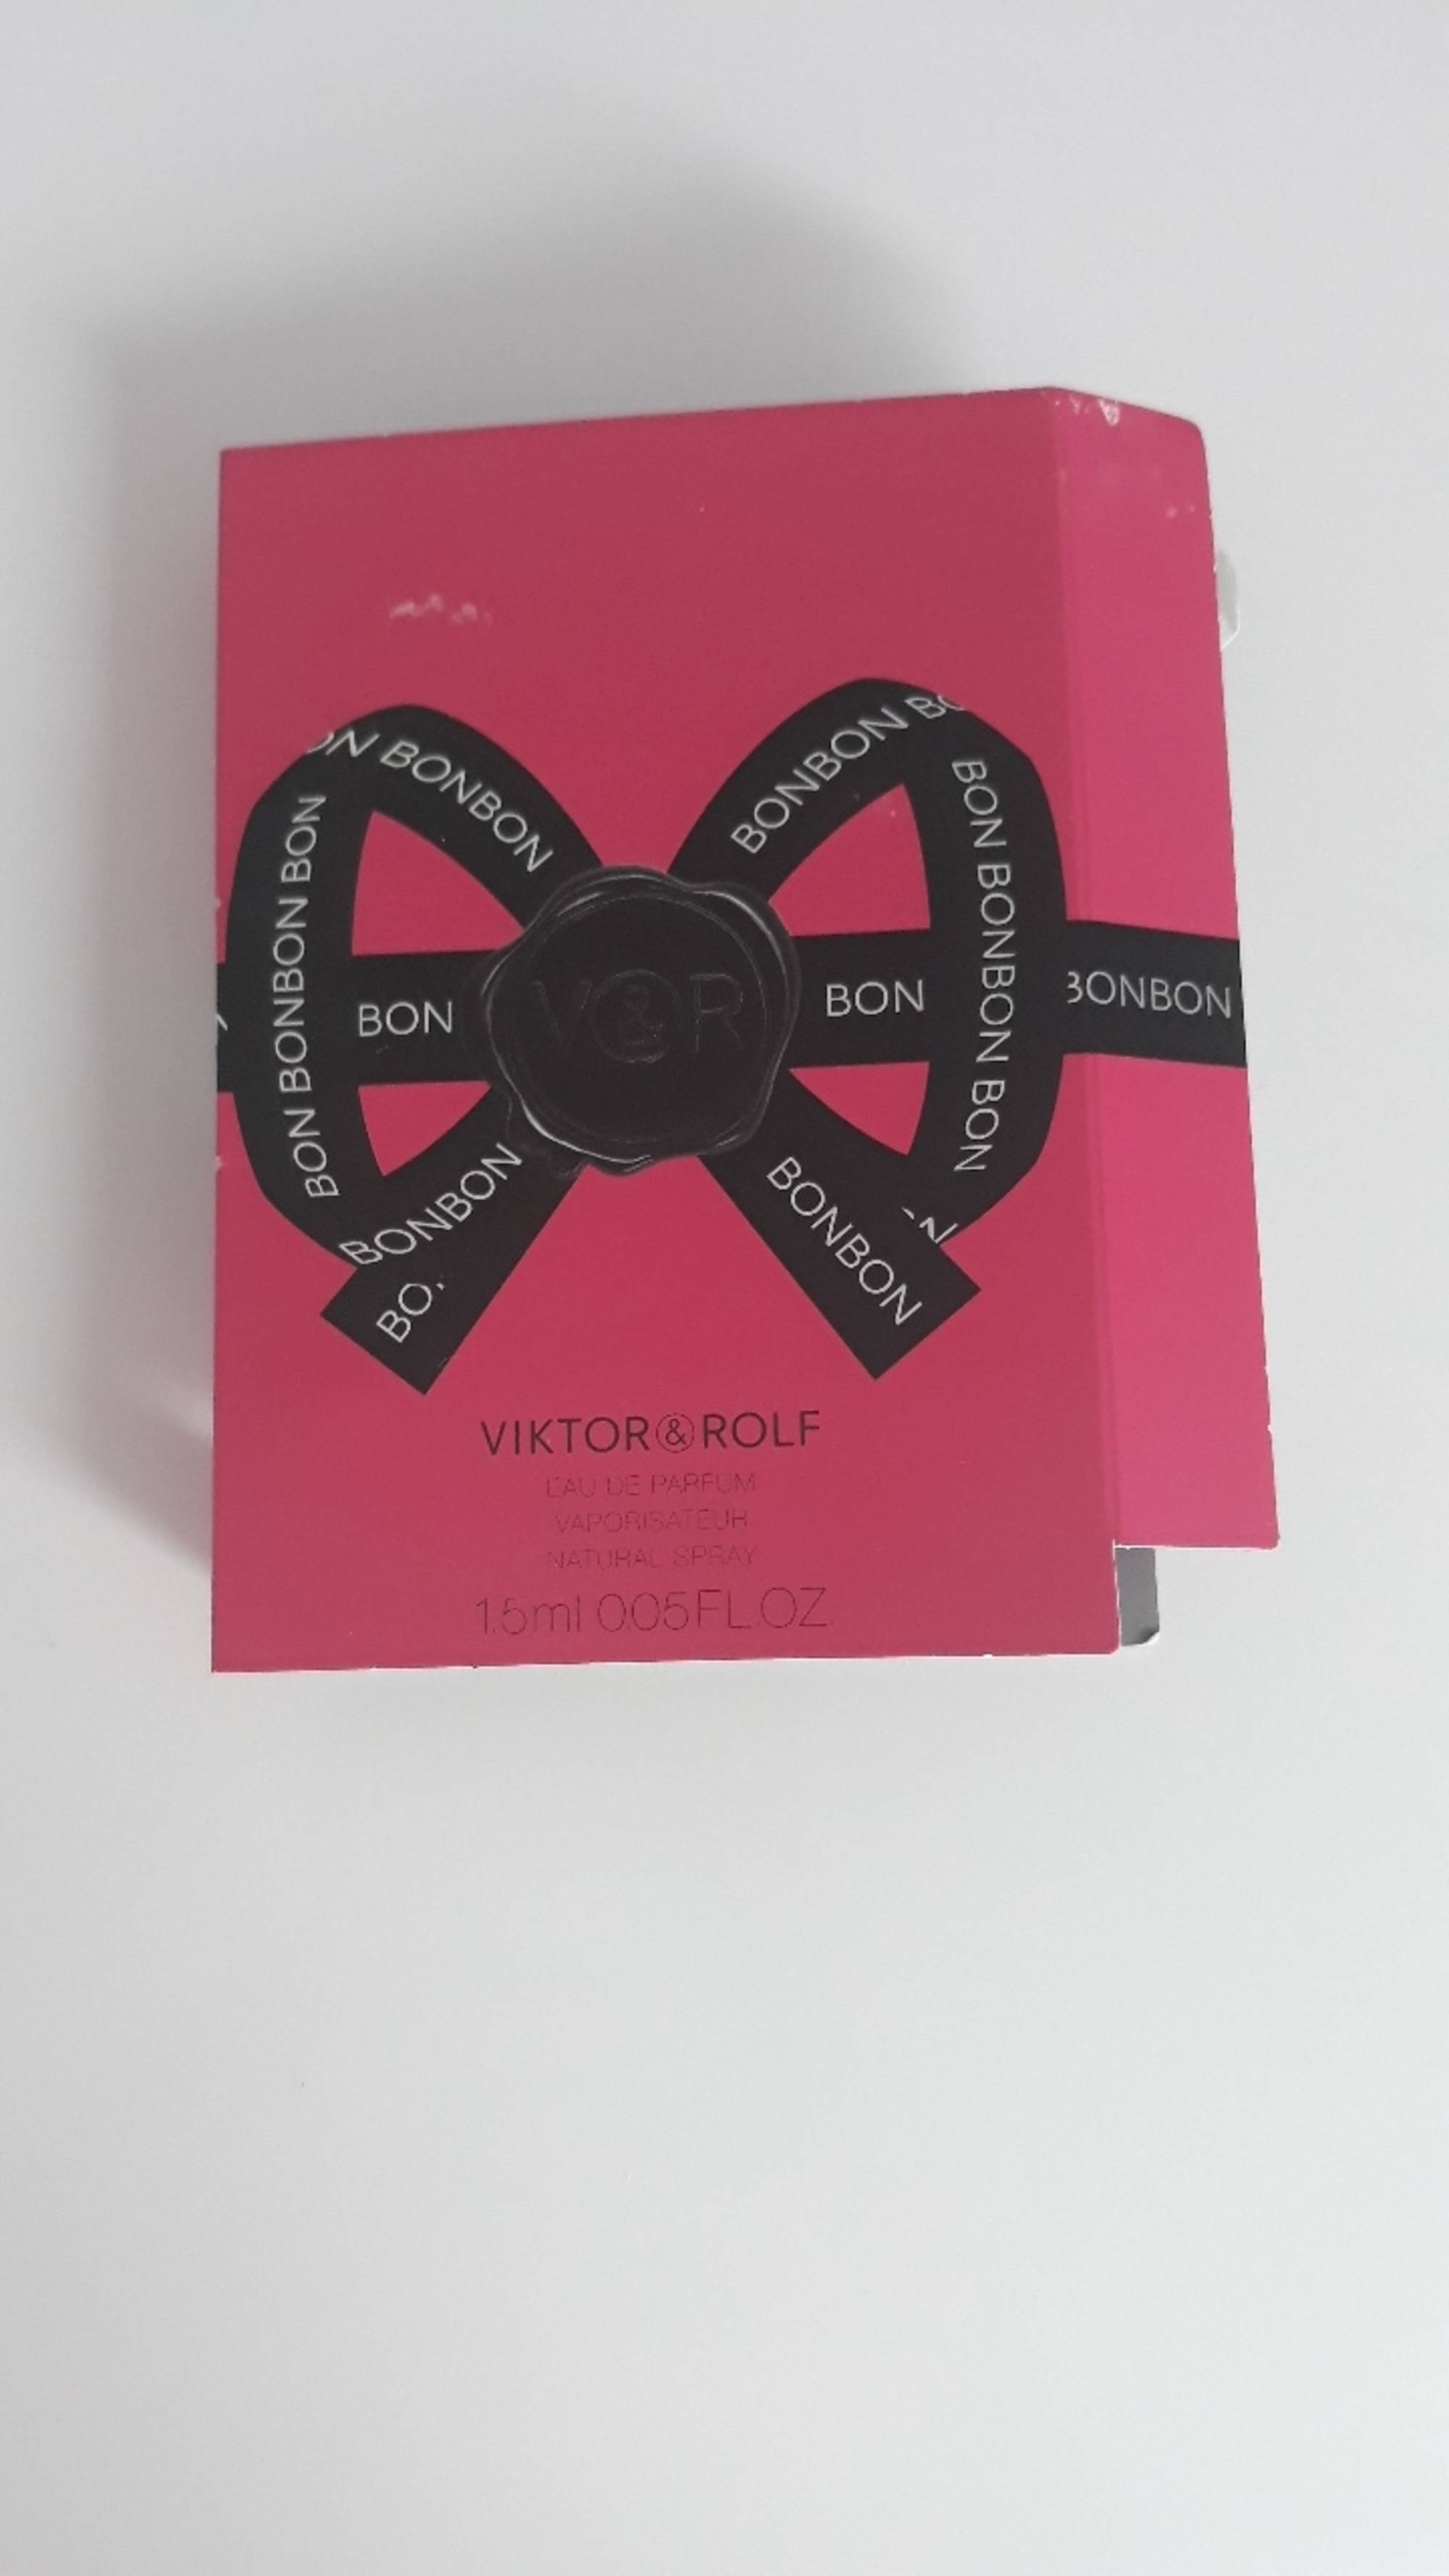 VIKTOR & ROLF - Bonbon - Eau de parfum vaporisateur